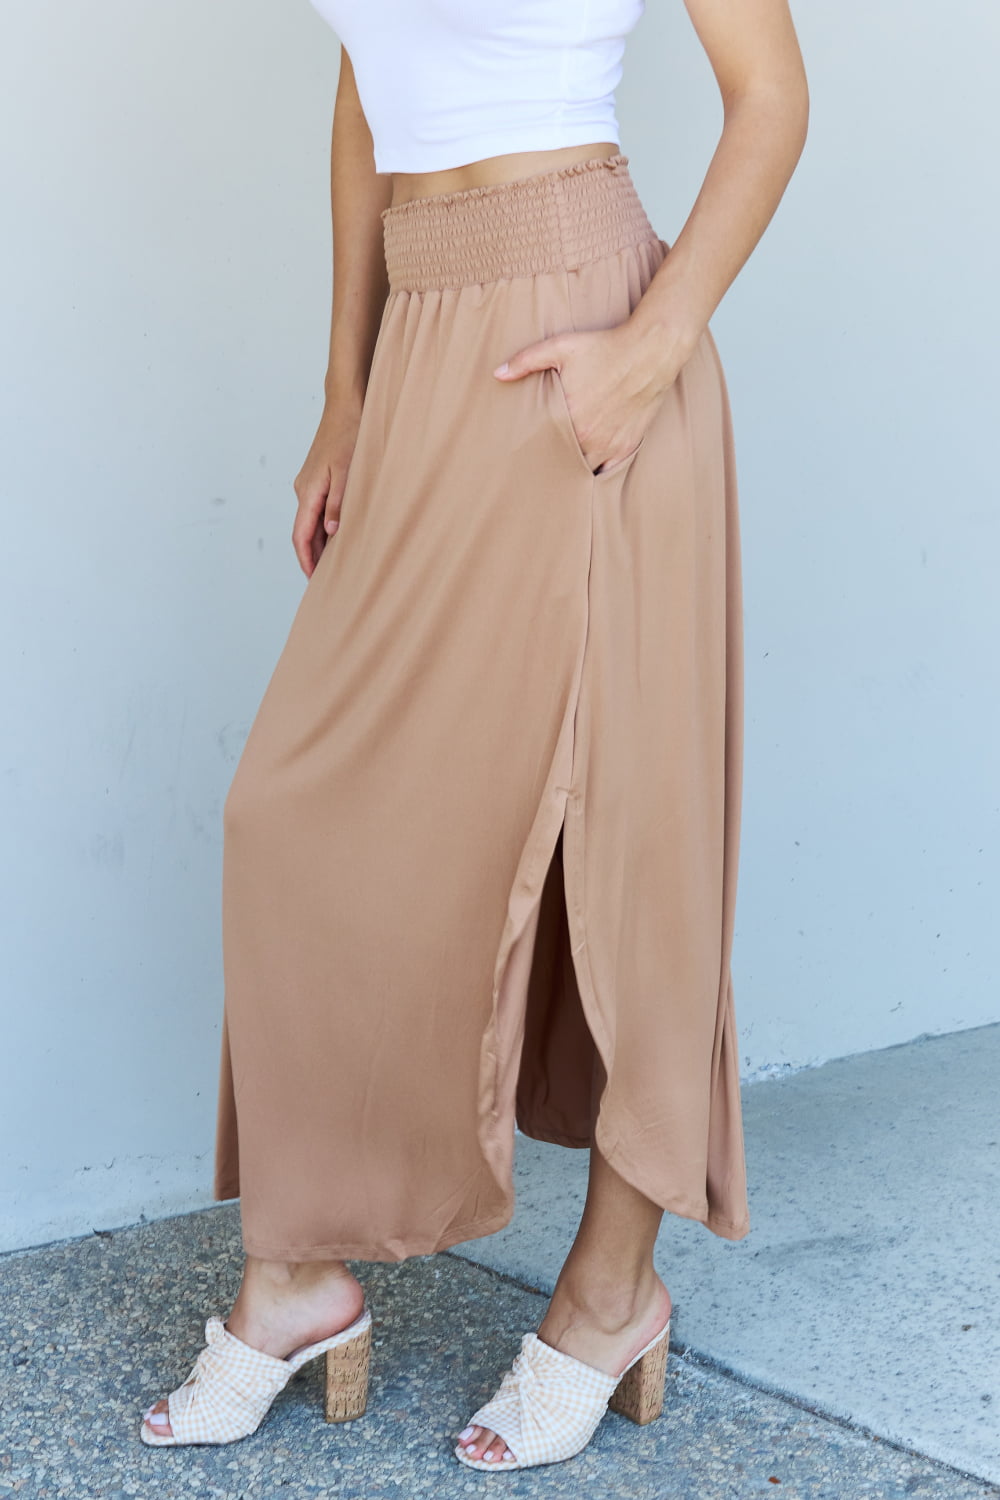 Doublju Comfort Princess Full Size High Waist Scoop Hem Maxi Skirt in Tan - Tigbul's Fashion